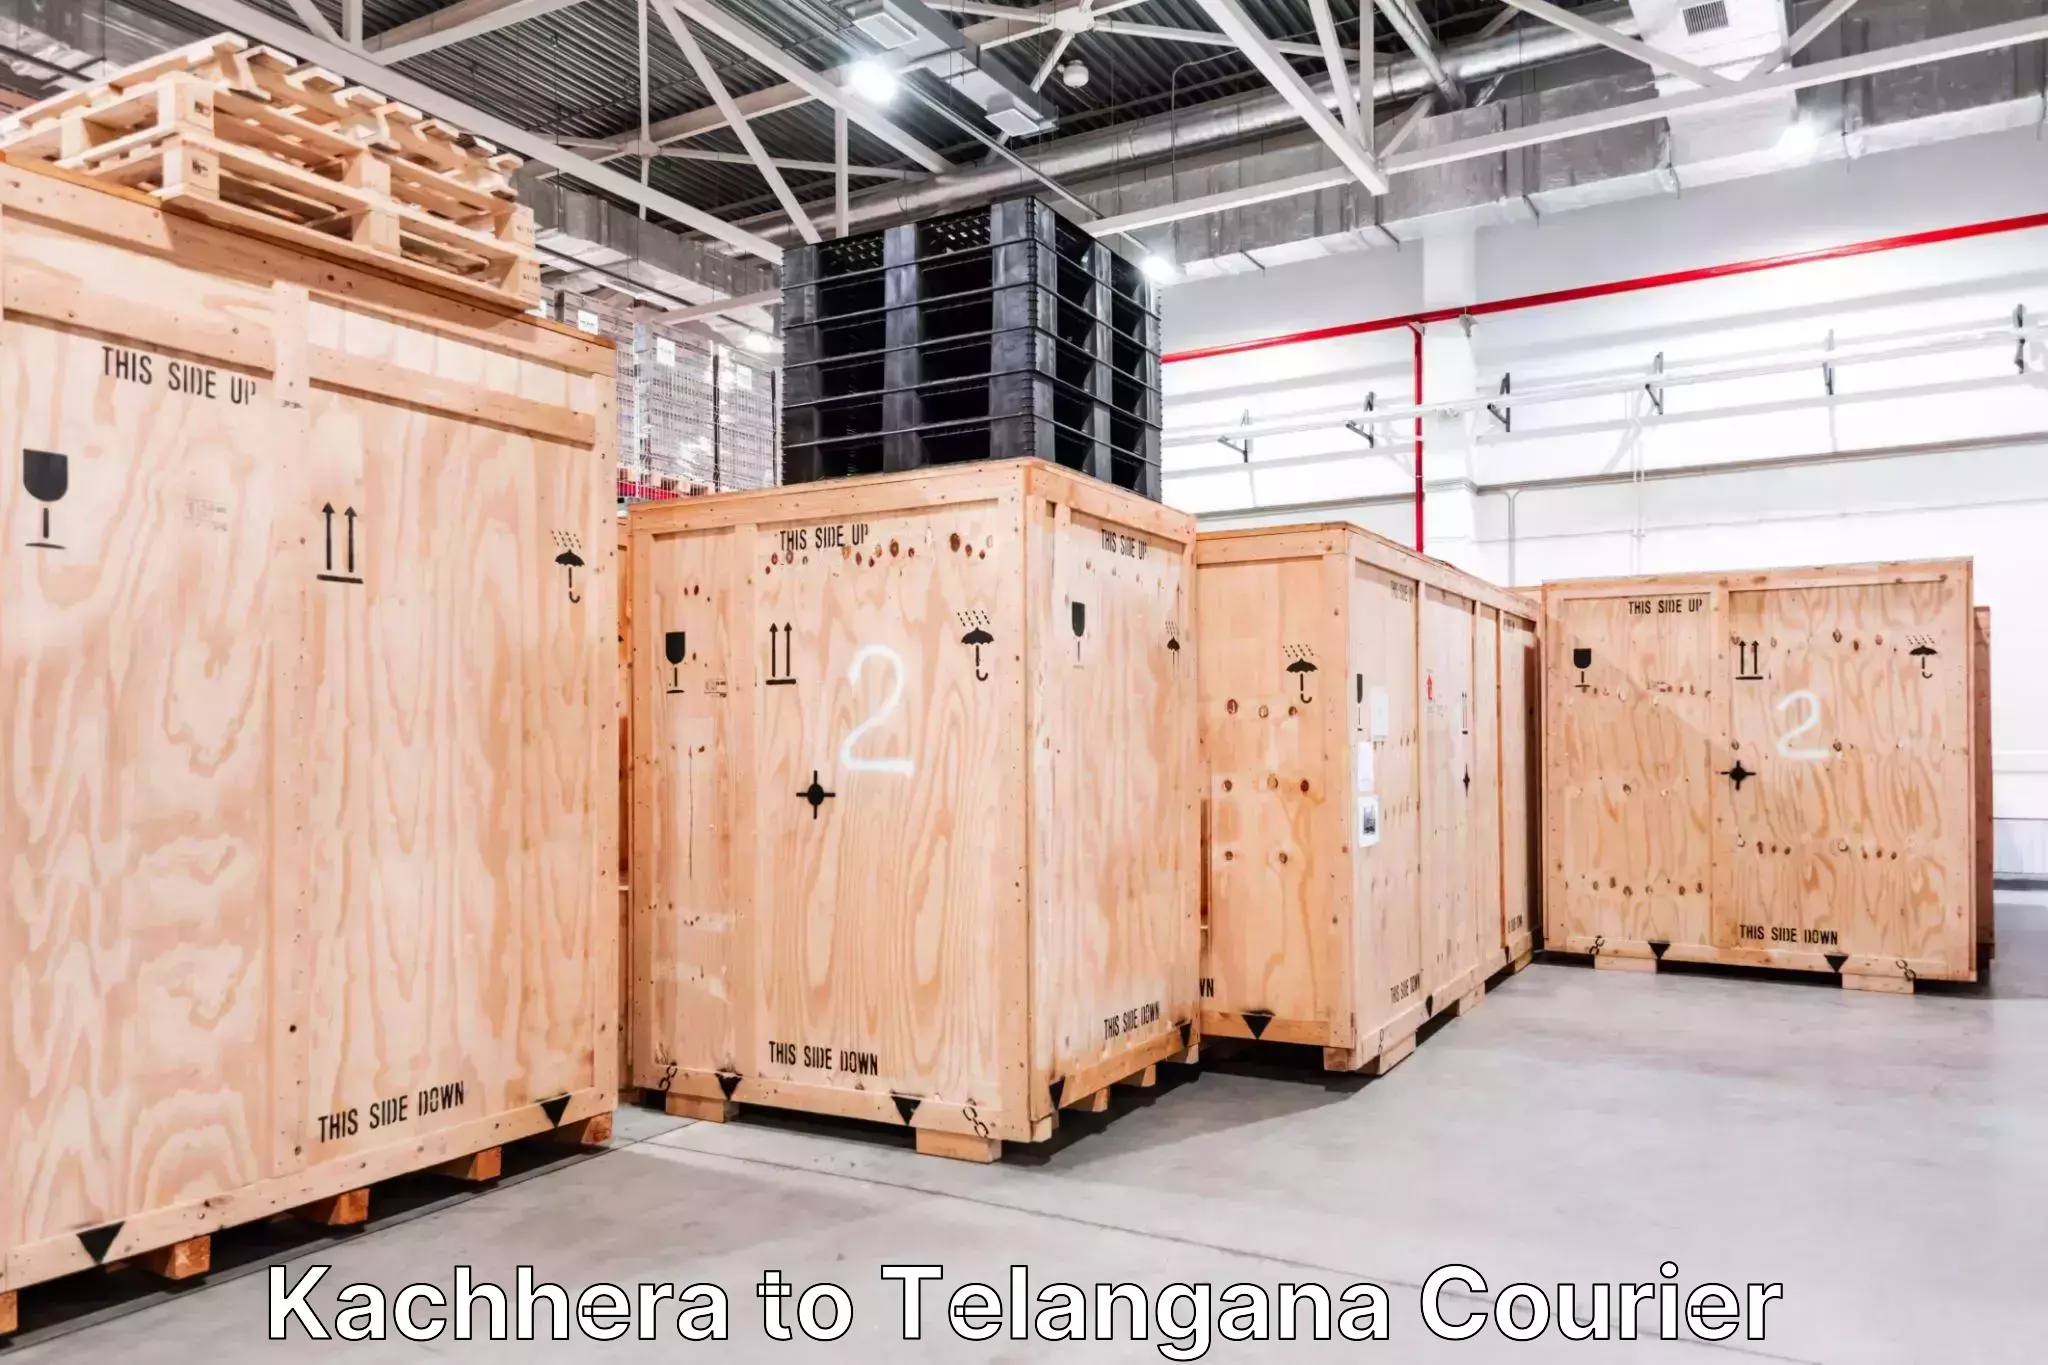 Luggage shipment processing in Kachhera to Kothakota